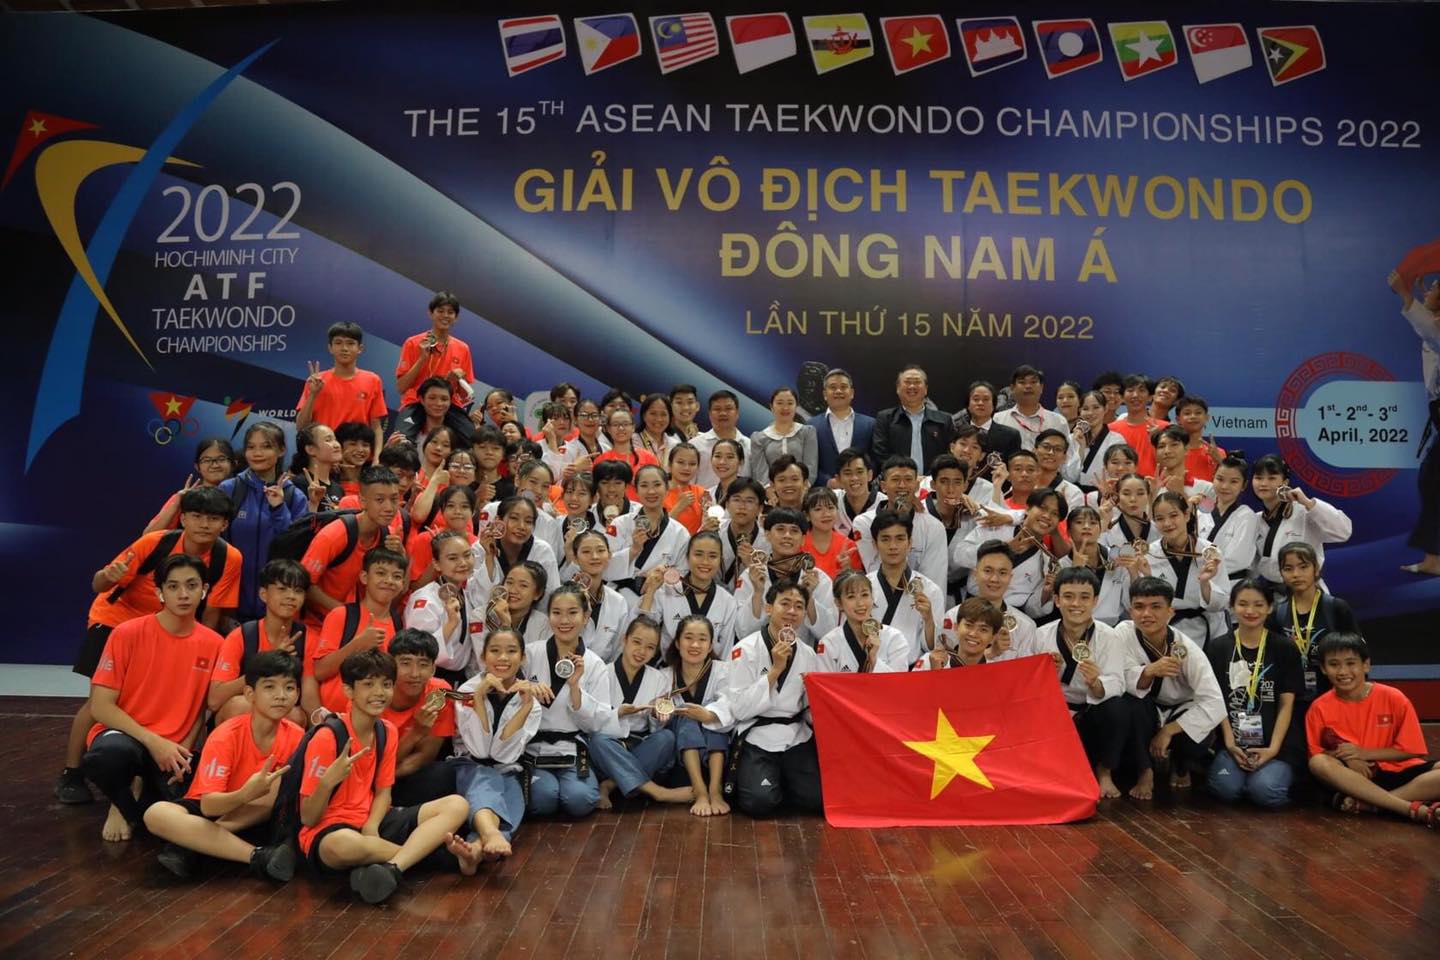 Đội tuyển Taekwondo Việt Nam khẳng định vị thế tại giải vô địch Đông Nam Á - Ảnh 1.